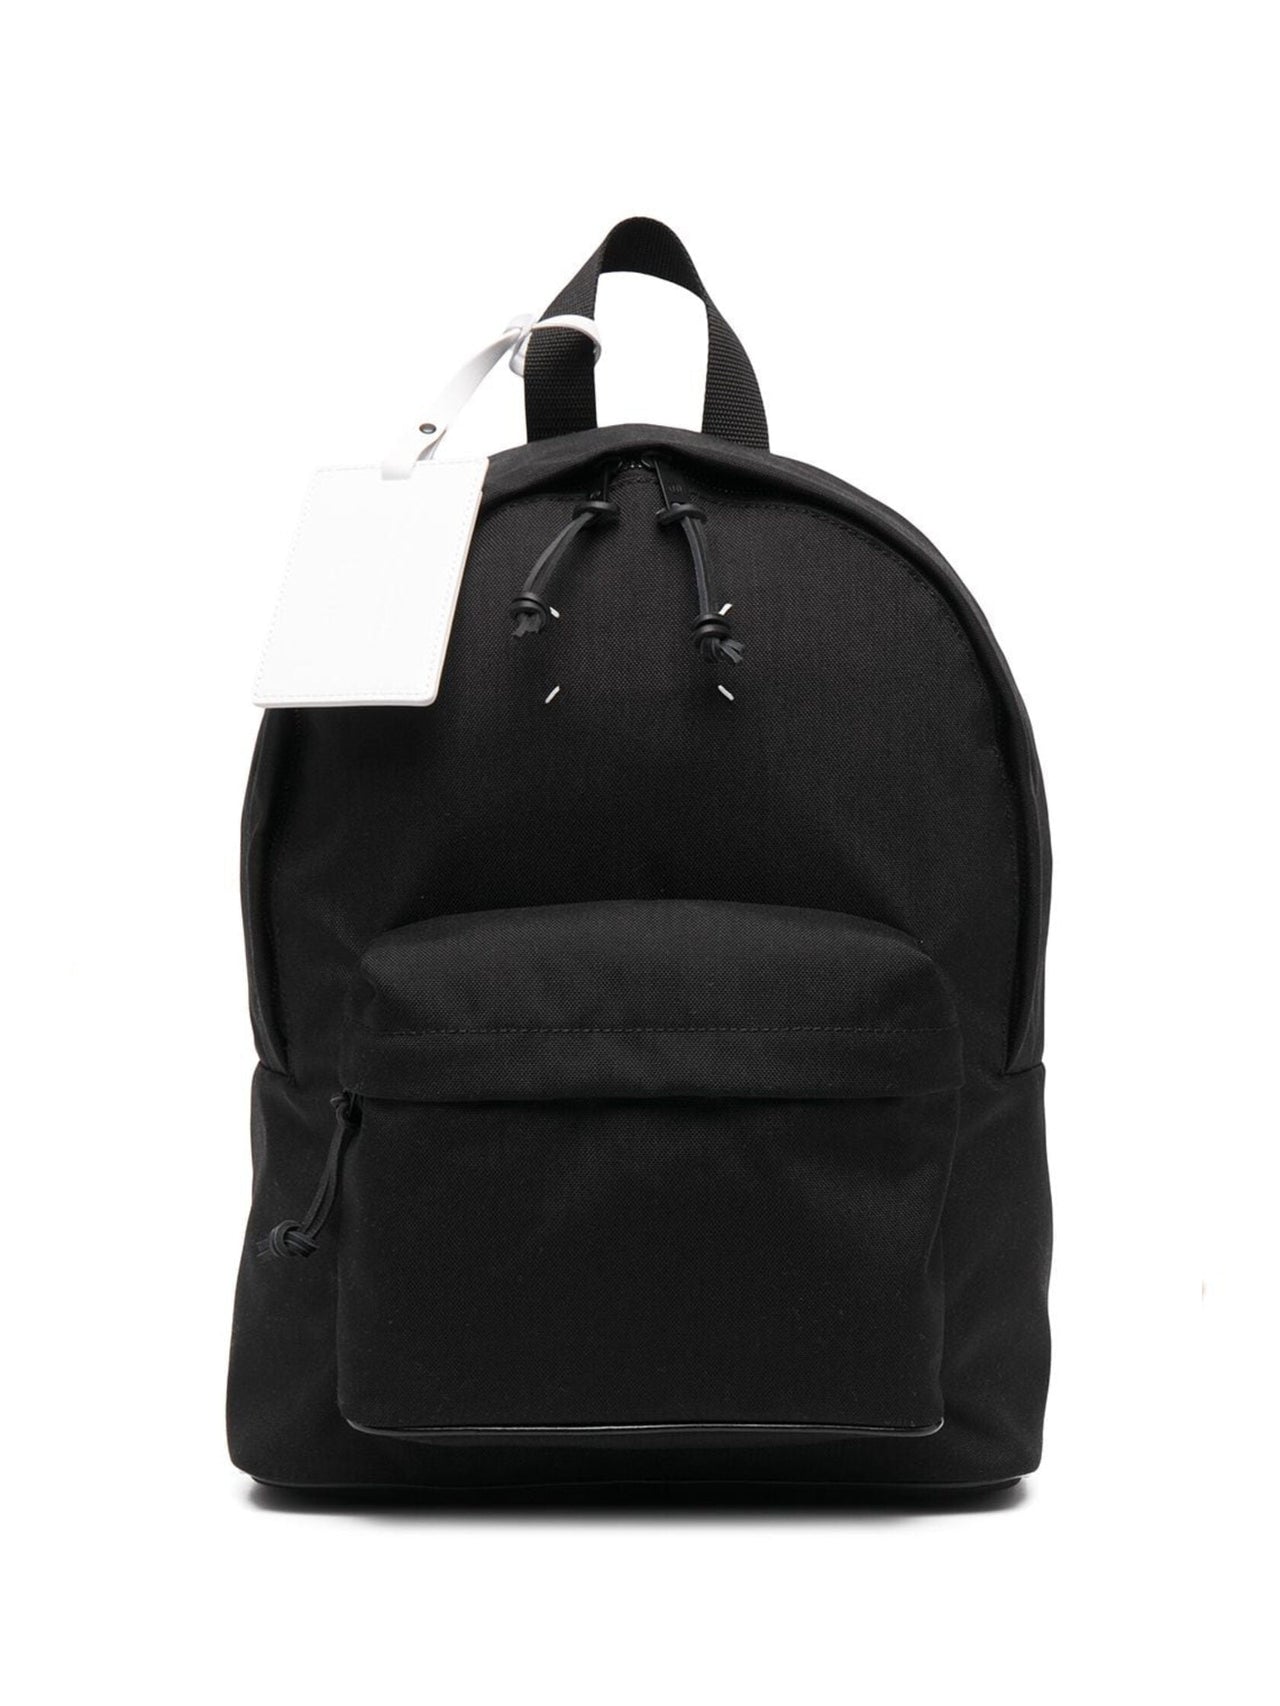 Maison Margiela Stereotype Backpack Black